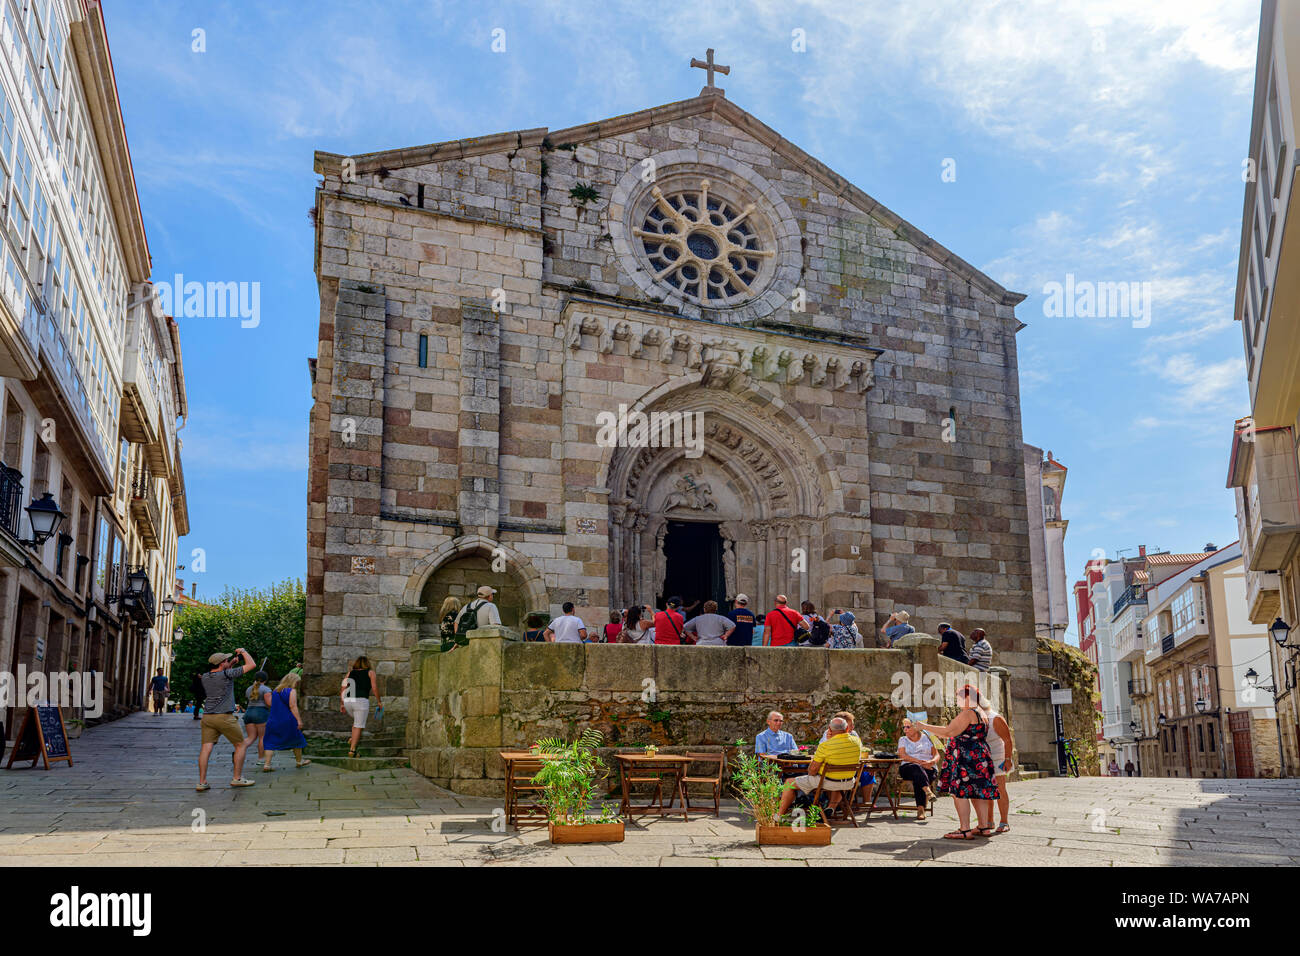 Eintritt in die historische Altstadt von La Coruna katholische Kirche Igrexa de Santiago, La Coruna, Galicien Spanien. Stockfoto